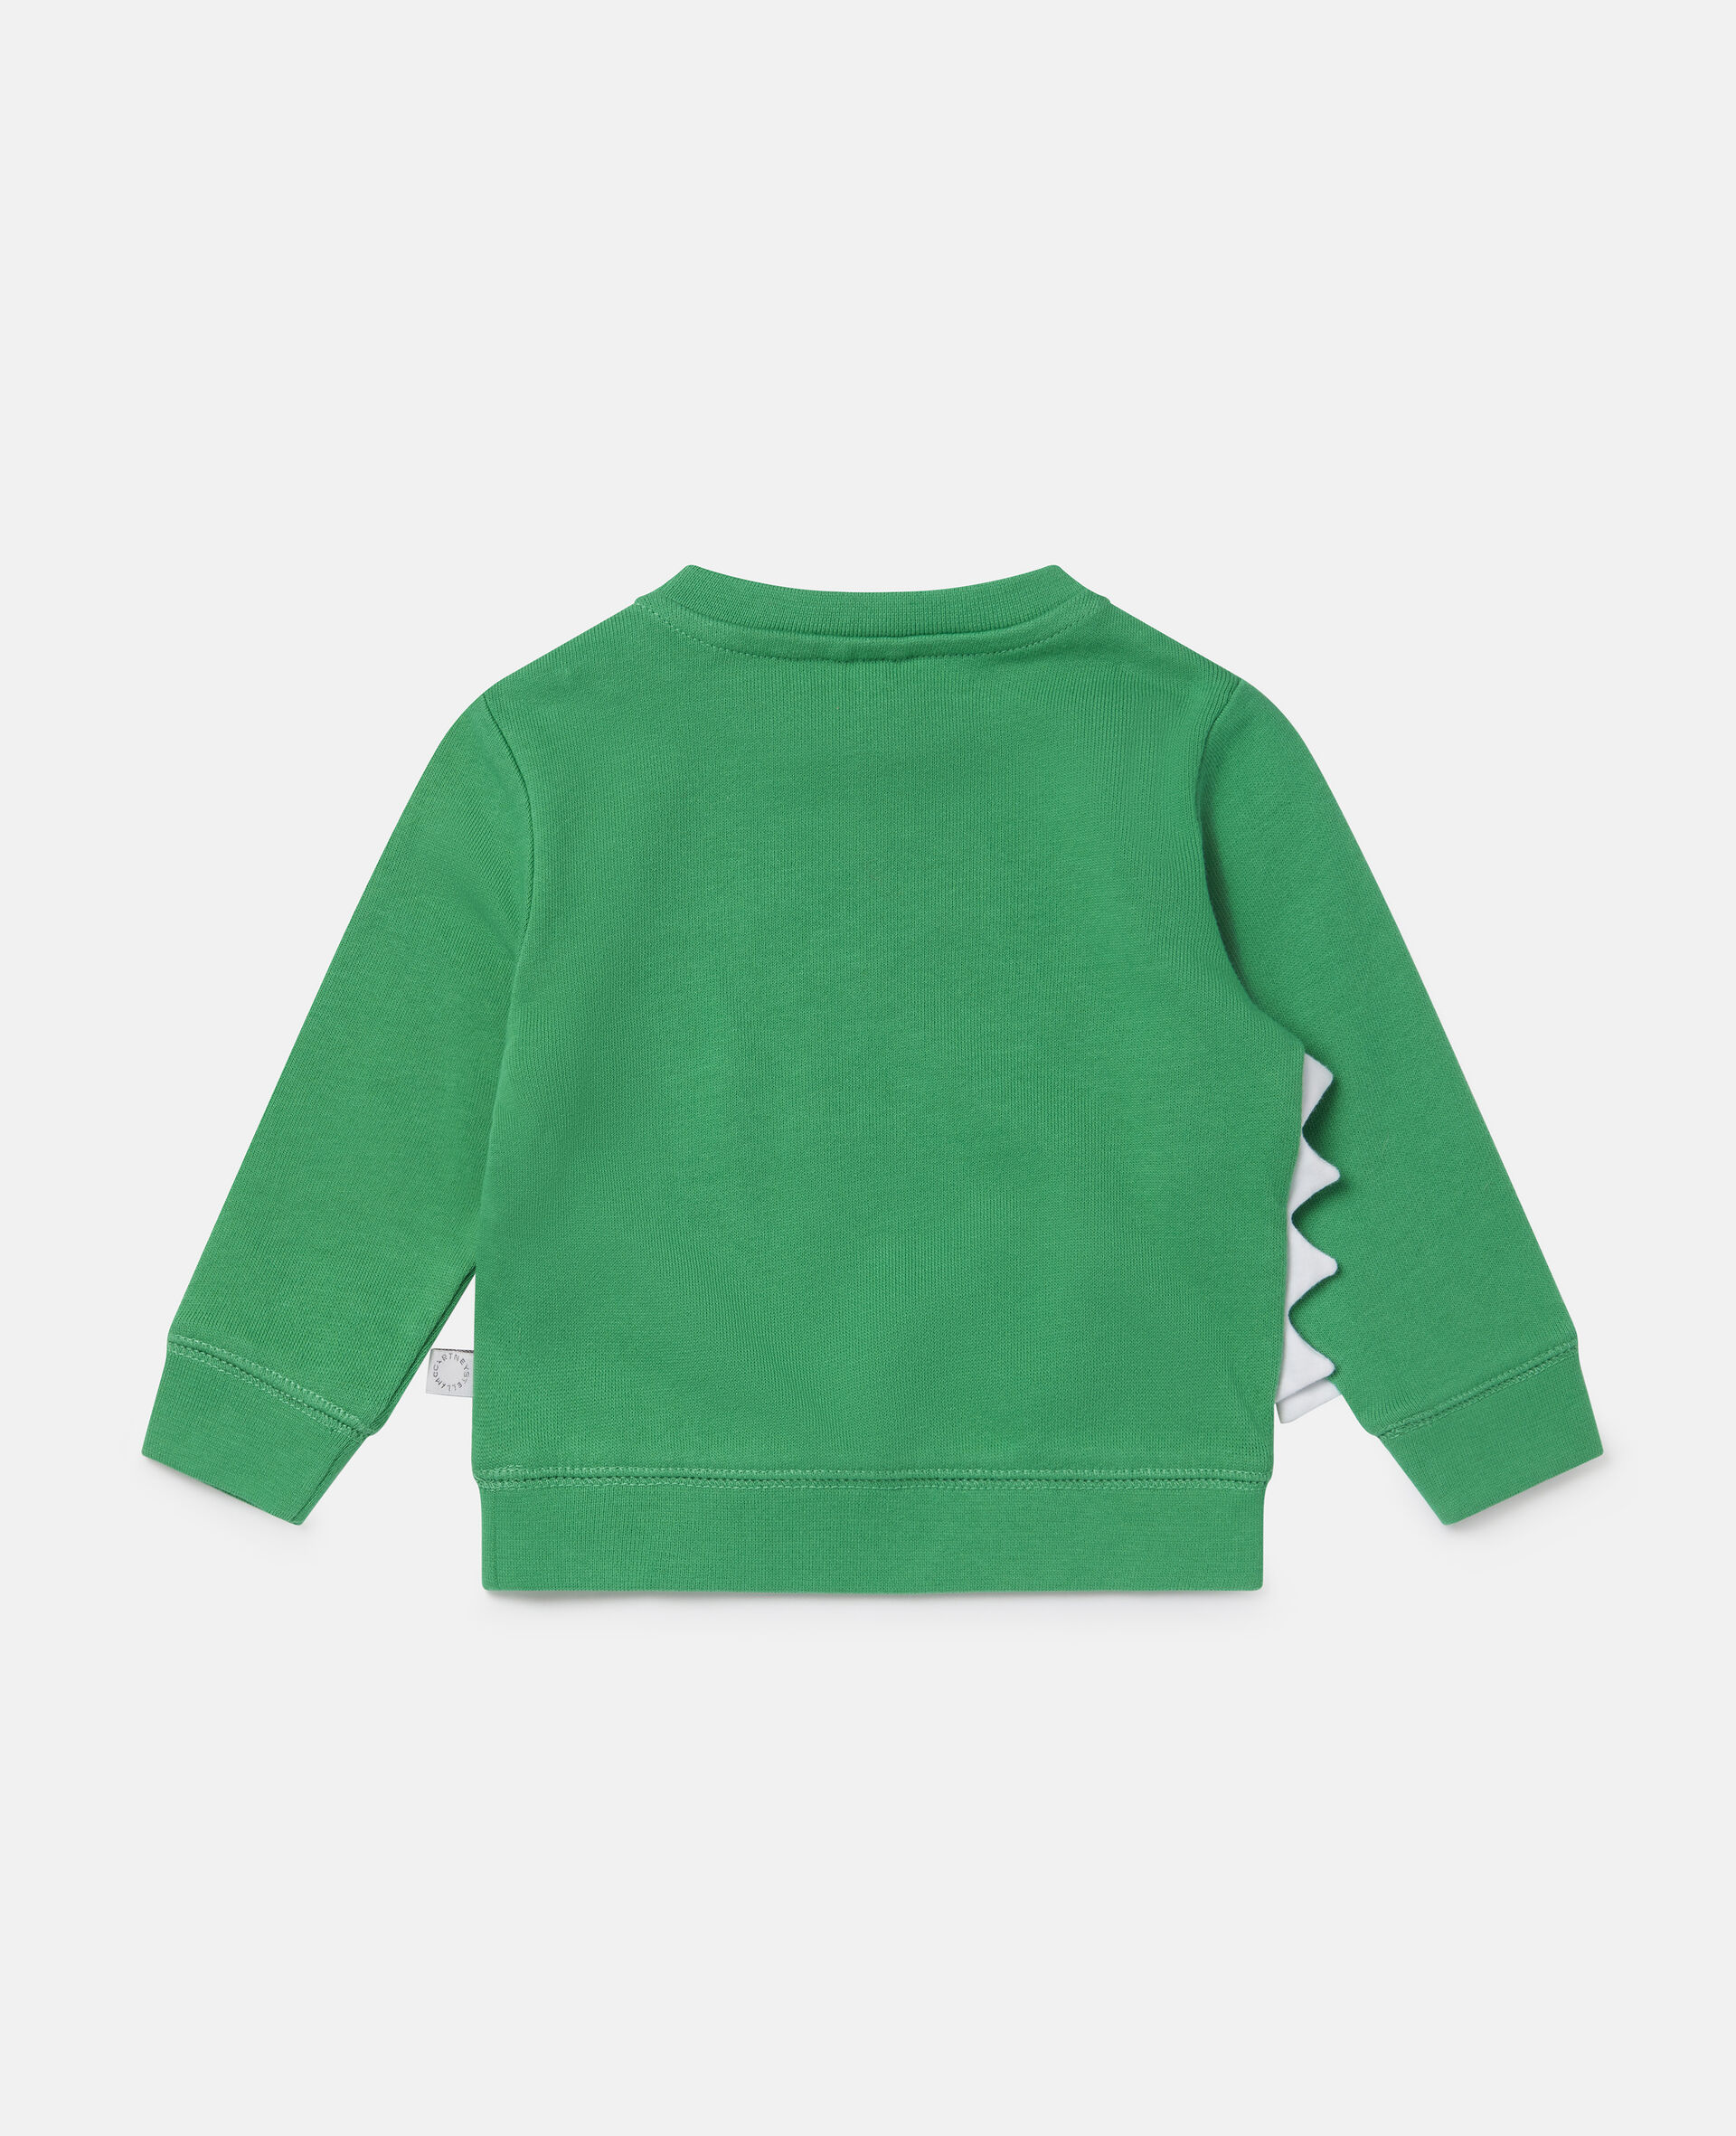 Crocodile & Spike Print Cotton Fleece Sweatshirt-Green-large image number 2